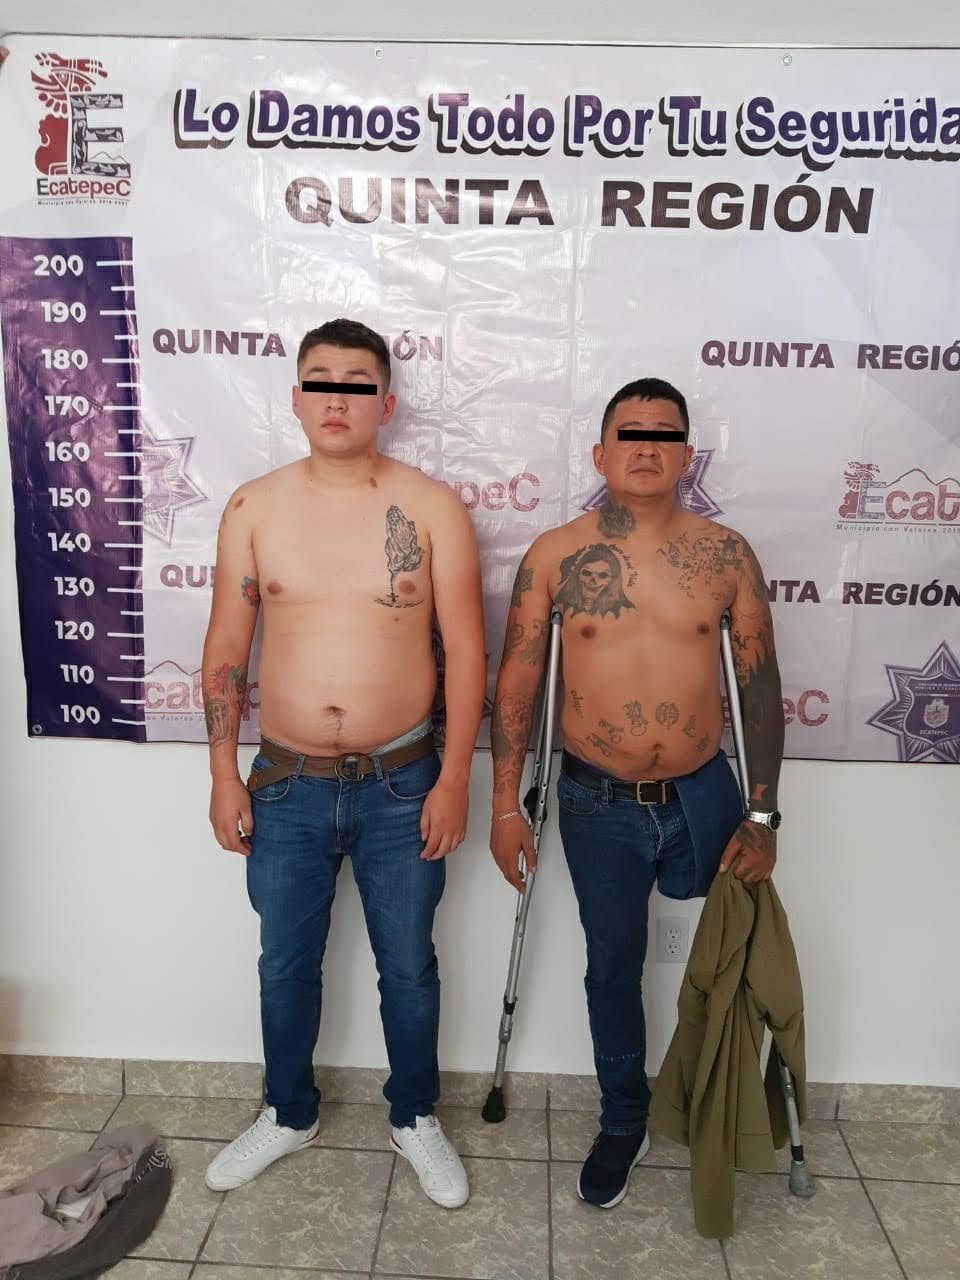 Efectivos de la policía municipal de Ecatepec frustran robo a una vivienda y detiene a 2 presuntos ladrones; a uno de ellos le falta una pierna